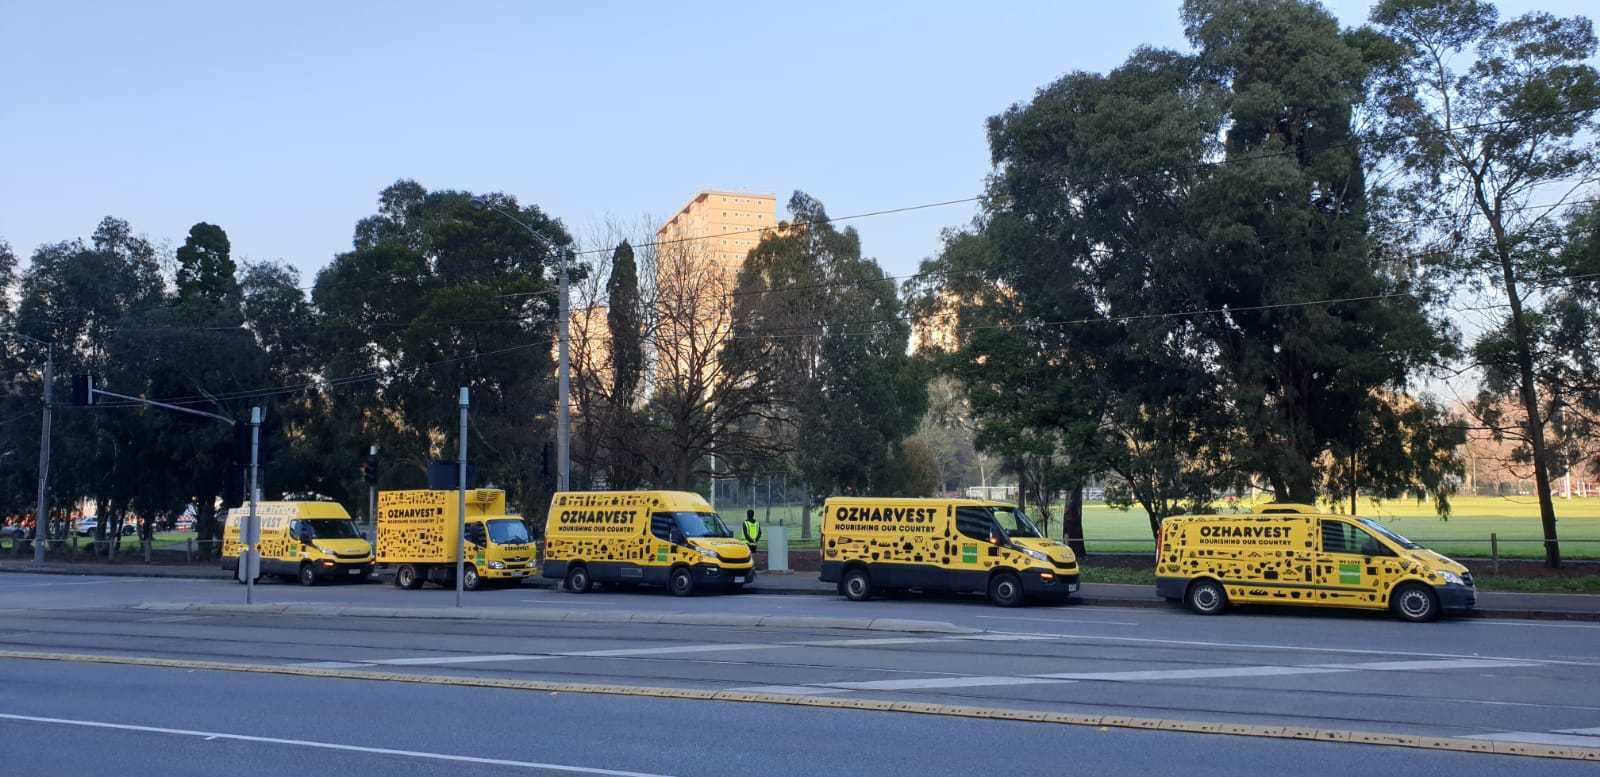 OzHarvest Melbourne vans during COVID-19